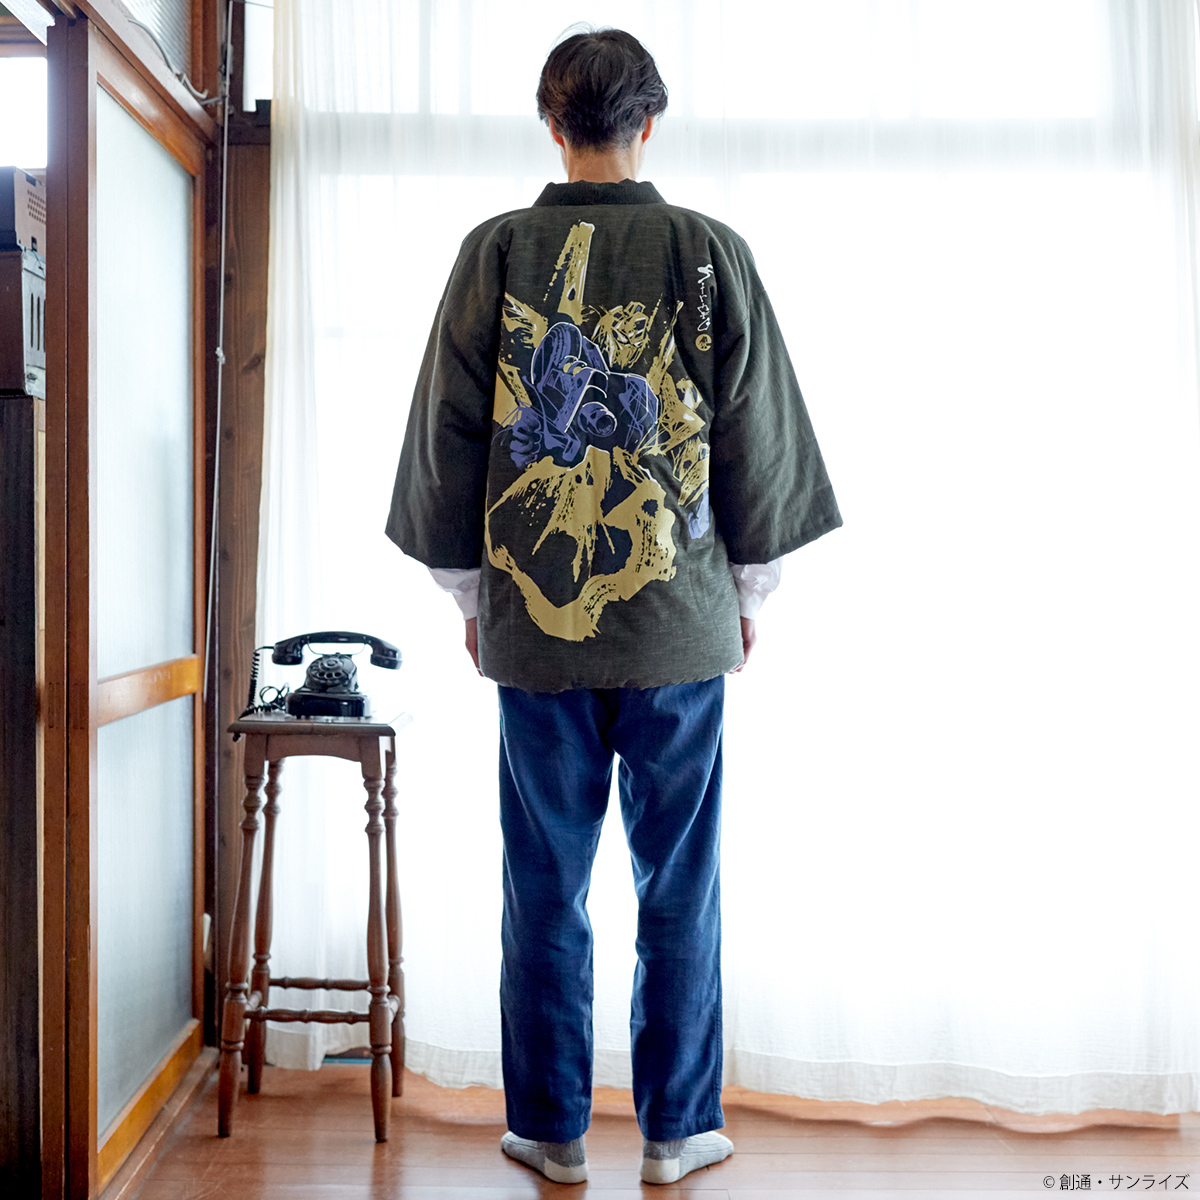 『機動戦士Zガンダム』より、1913年創業の老舗メーカー宮田織物とのコラボによる、「わた入れはんてん」が登場!